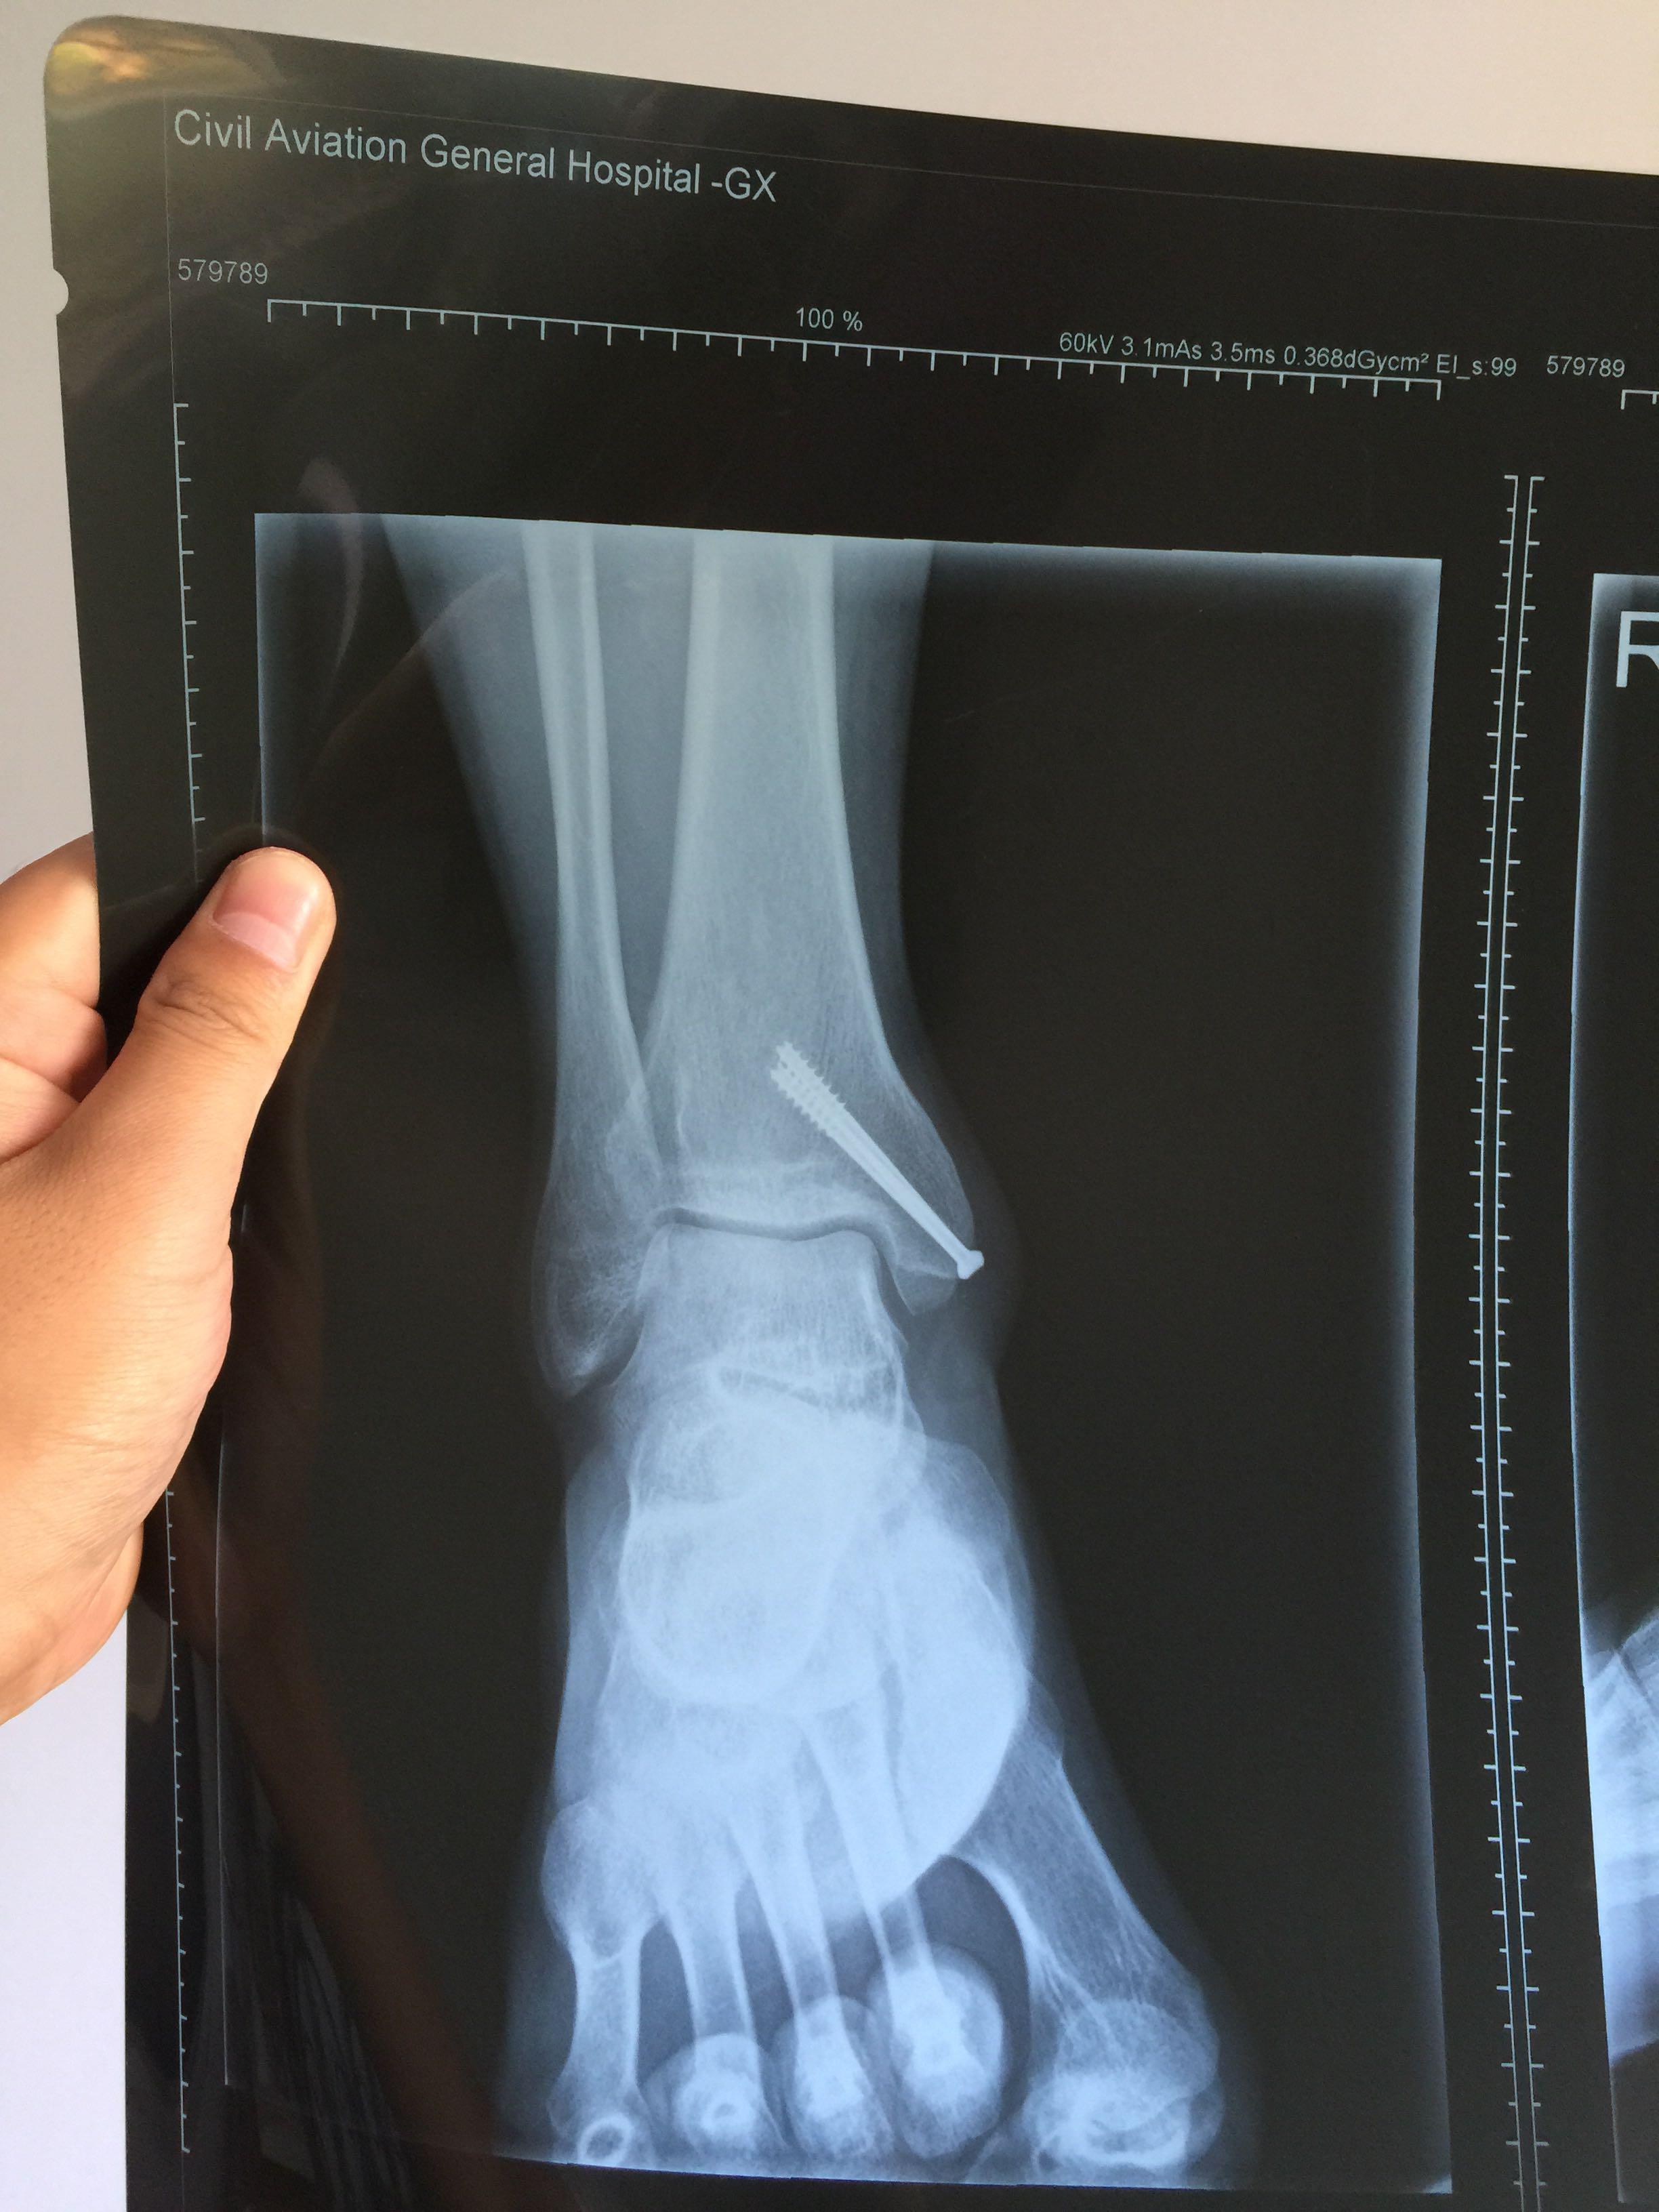 右内踝骨折,现在打石膏保守治疗,有什么治疗建议吗? 